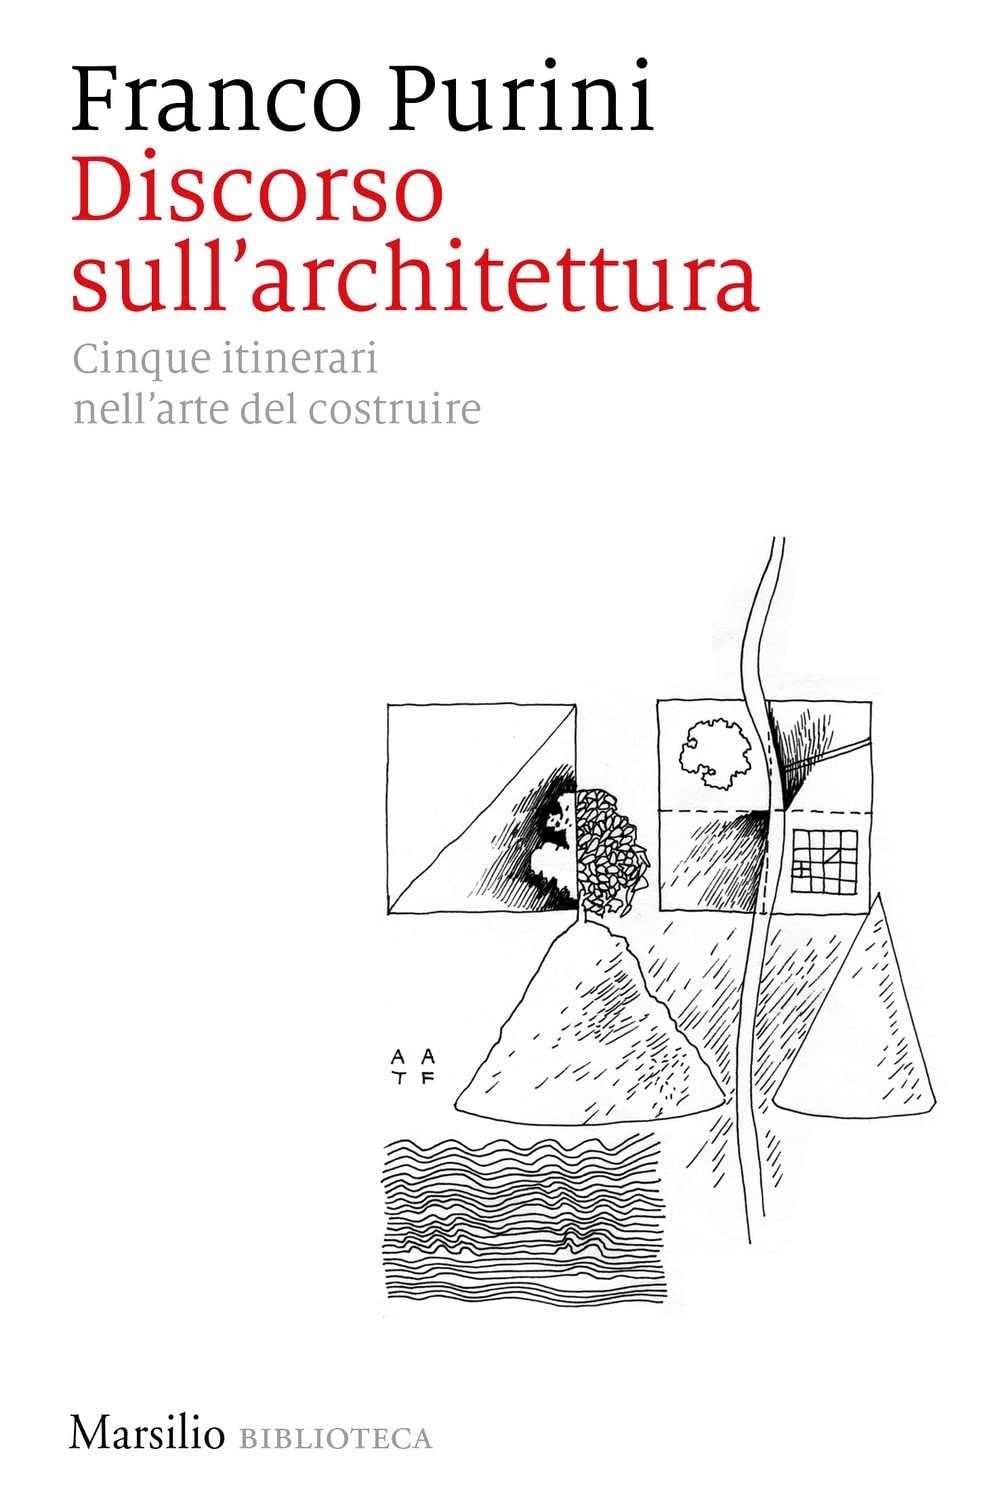 Franco Purini – Discorso sull'architettura. Cinque itinerari nell’arte del costruire (Marsilio, Venezia 2022)